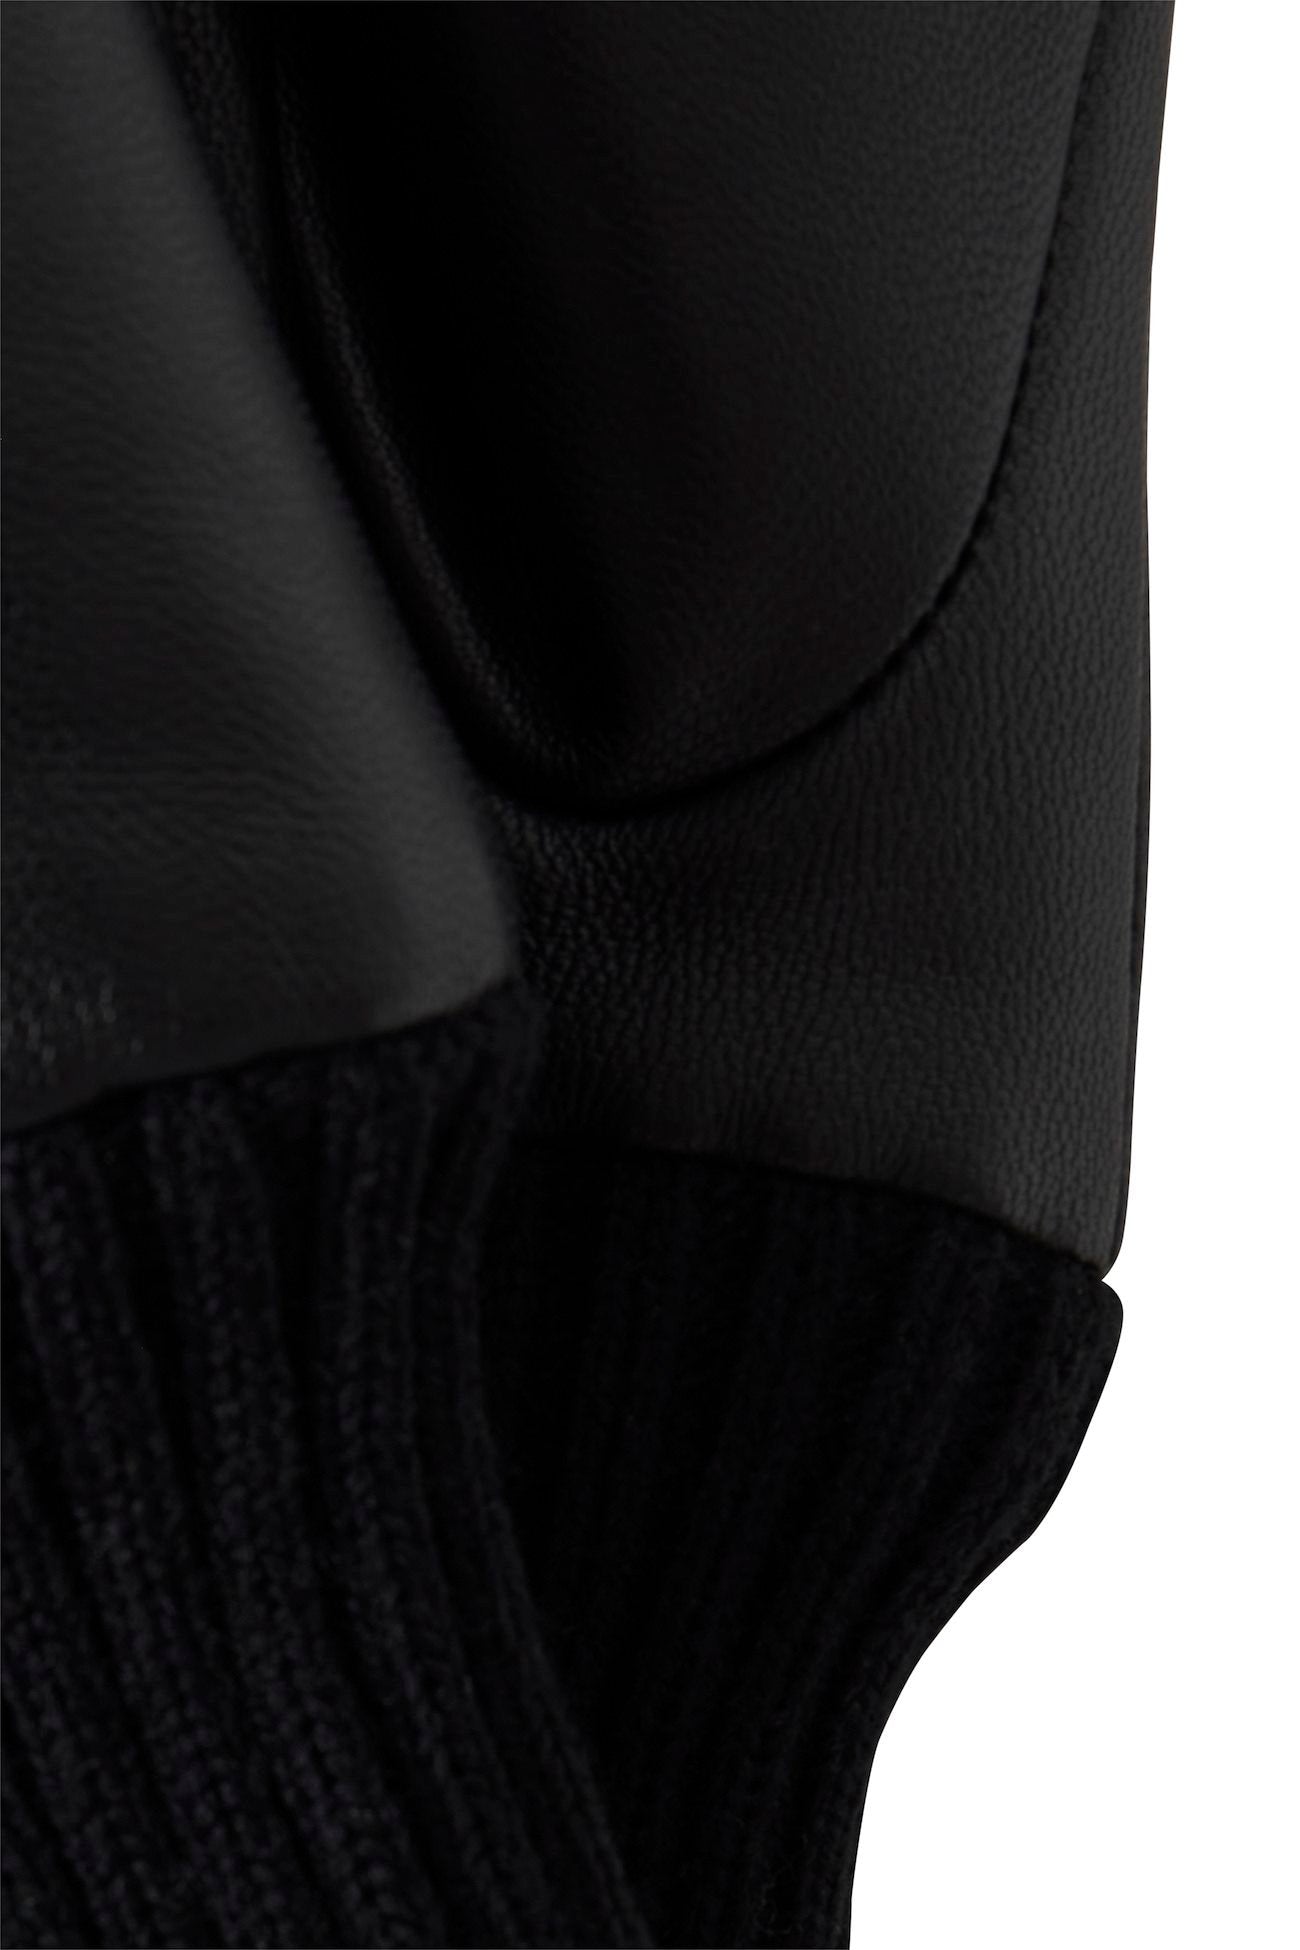 
                  
                    IANILLA Black Leather Gloves
                  
                